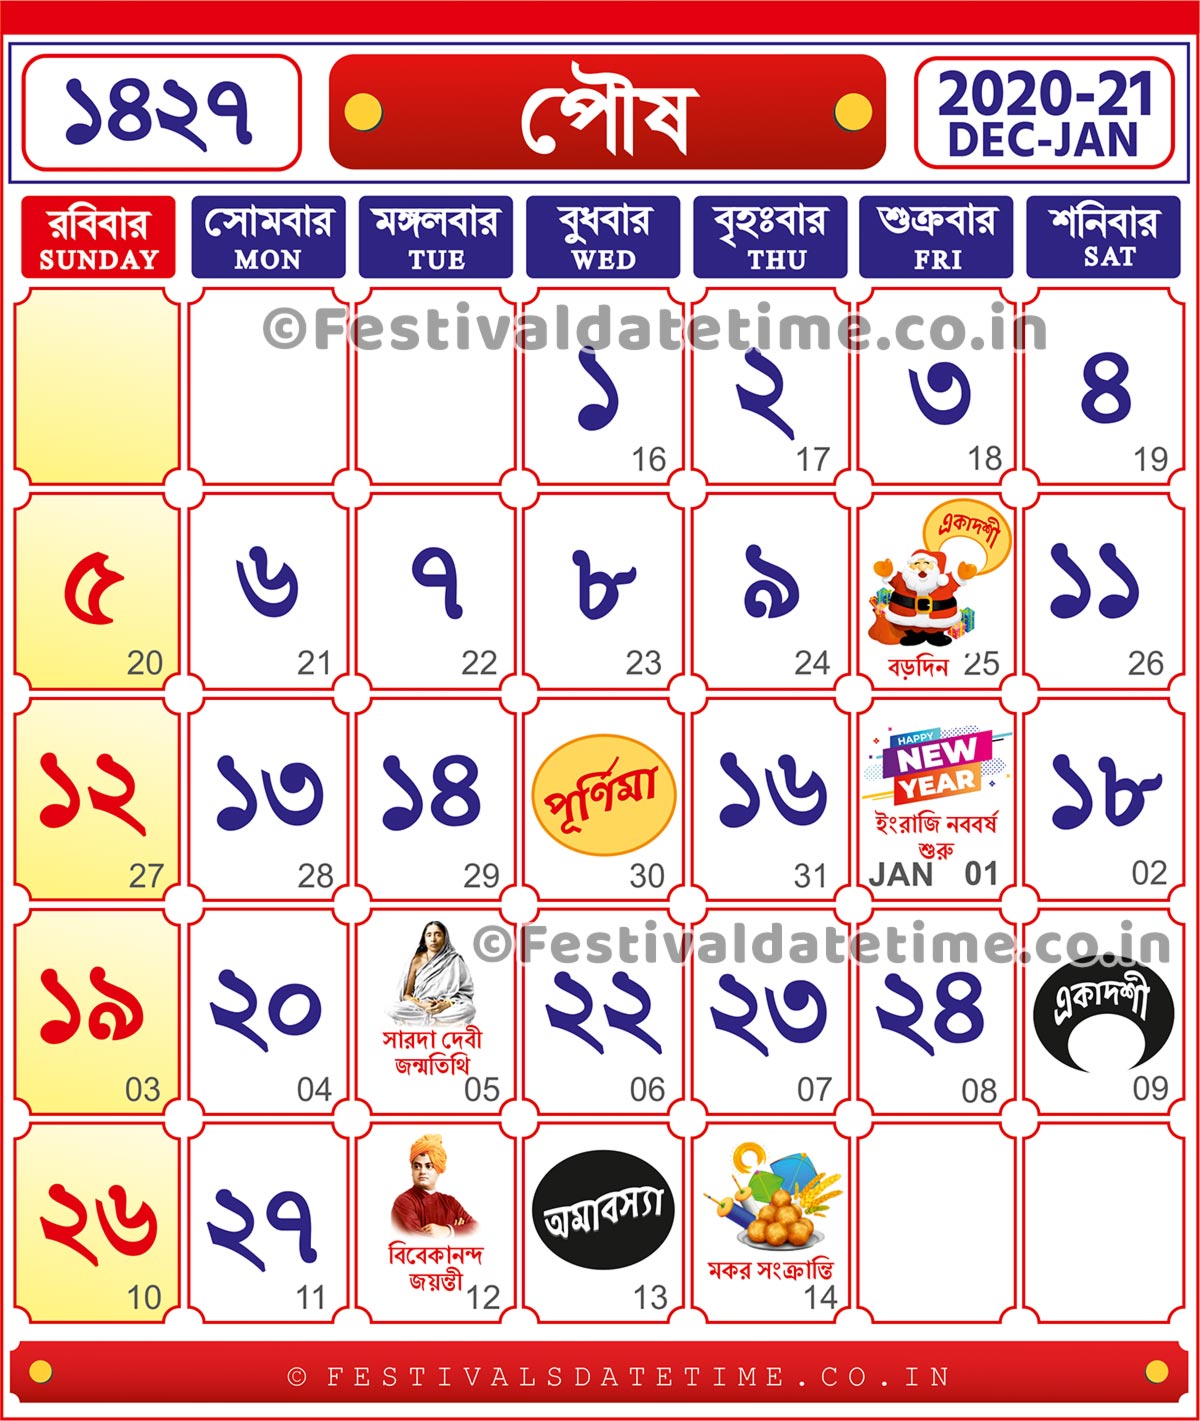 2021 calendar with bengali date 1427 Bengali Calendar Poush 1427 2020 2021 Bengali Calendar Download Bengali Calendar 1427 Festivals Date Time 2021 calendar with bengali date